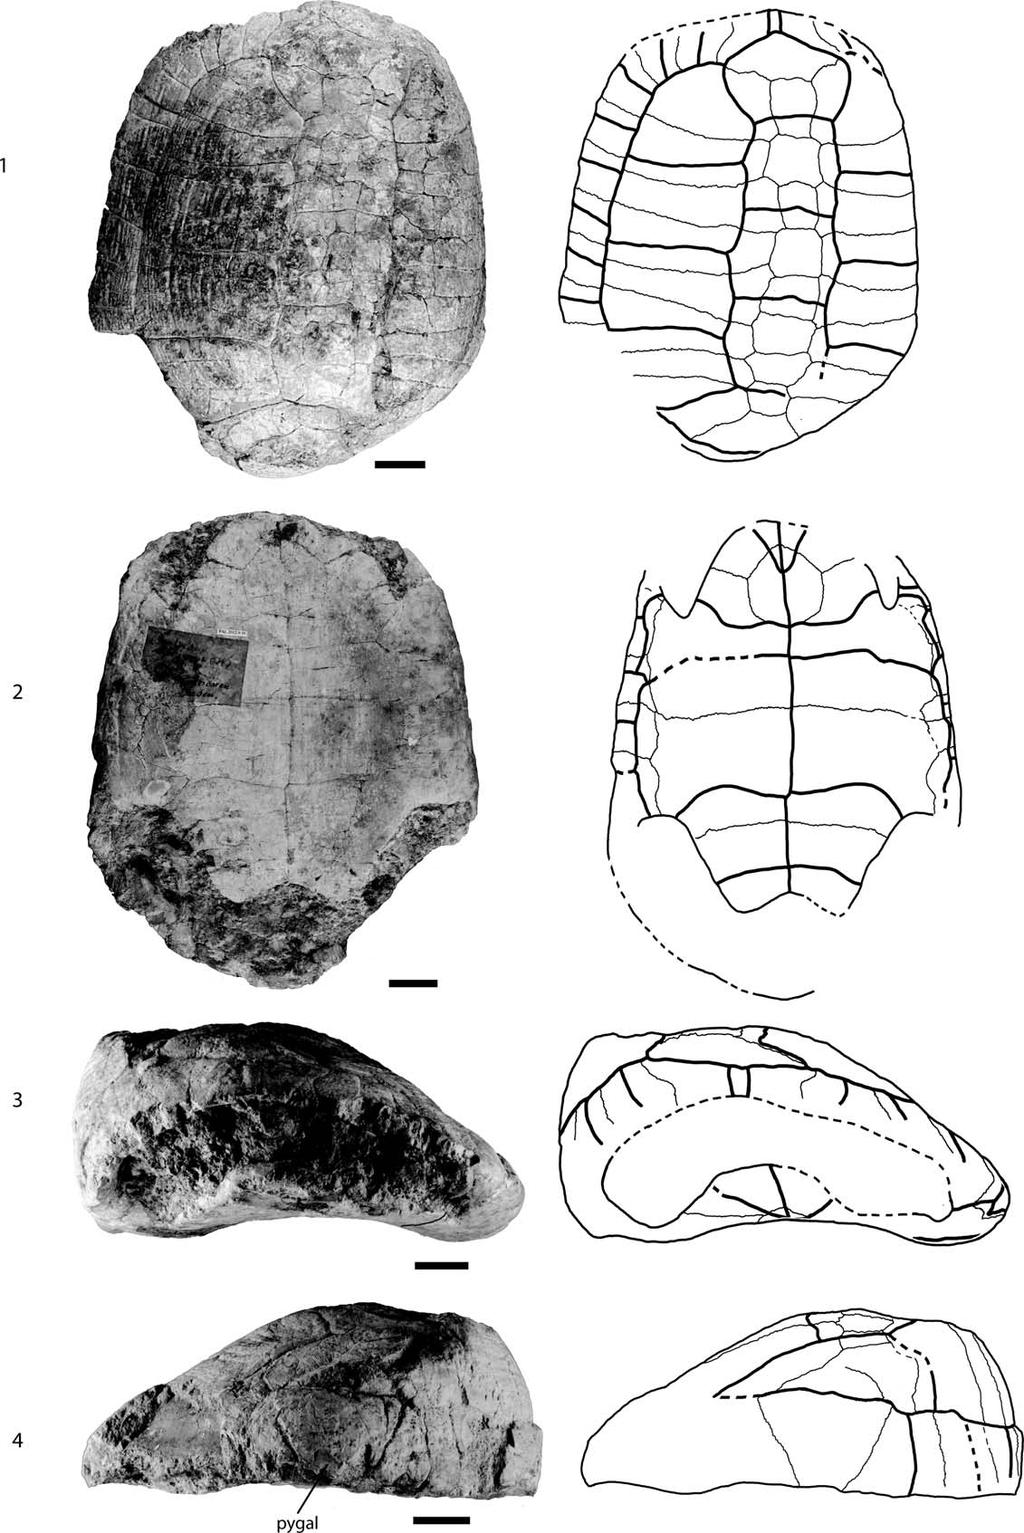 960 JOURNAL OF PALEONTOLOGY, V. 88, NO. 5, 2014 FIGURE 10 MT PAL.2012.0.10, Testudo antiqua, middle Miocene of Hohenhöwen, Germany.